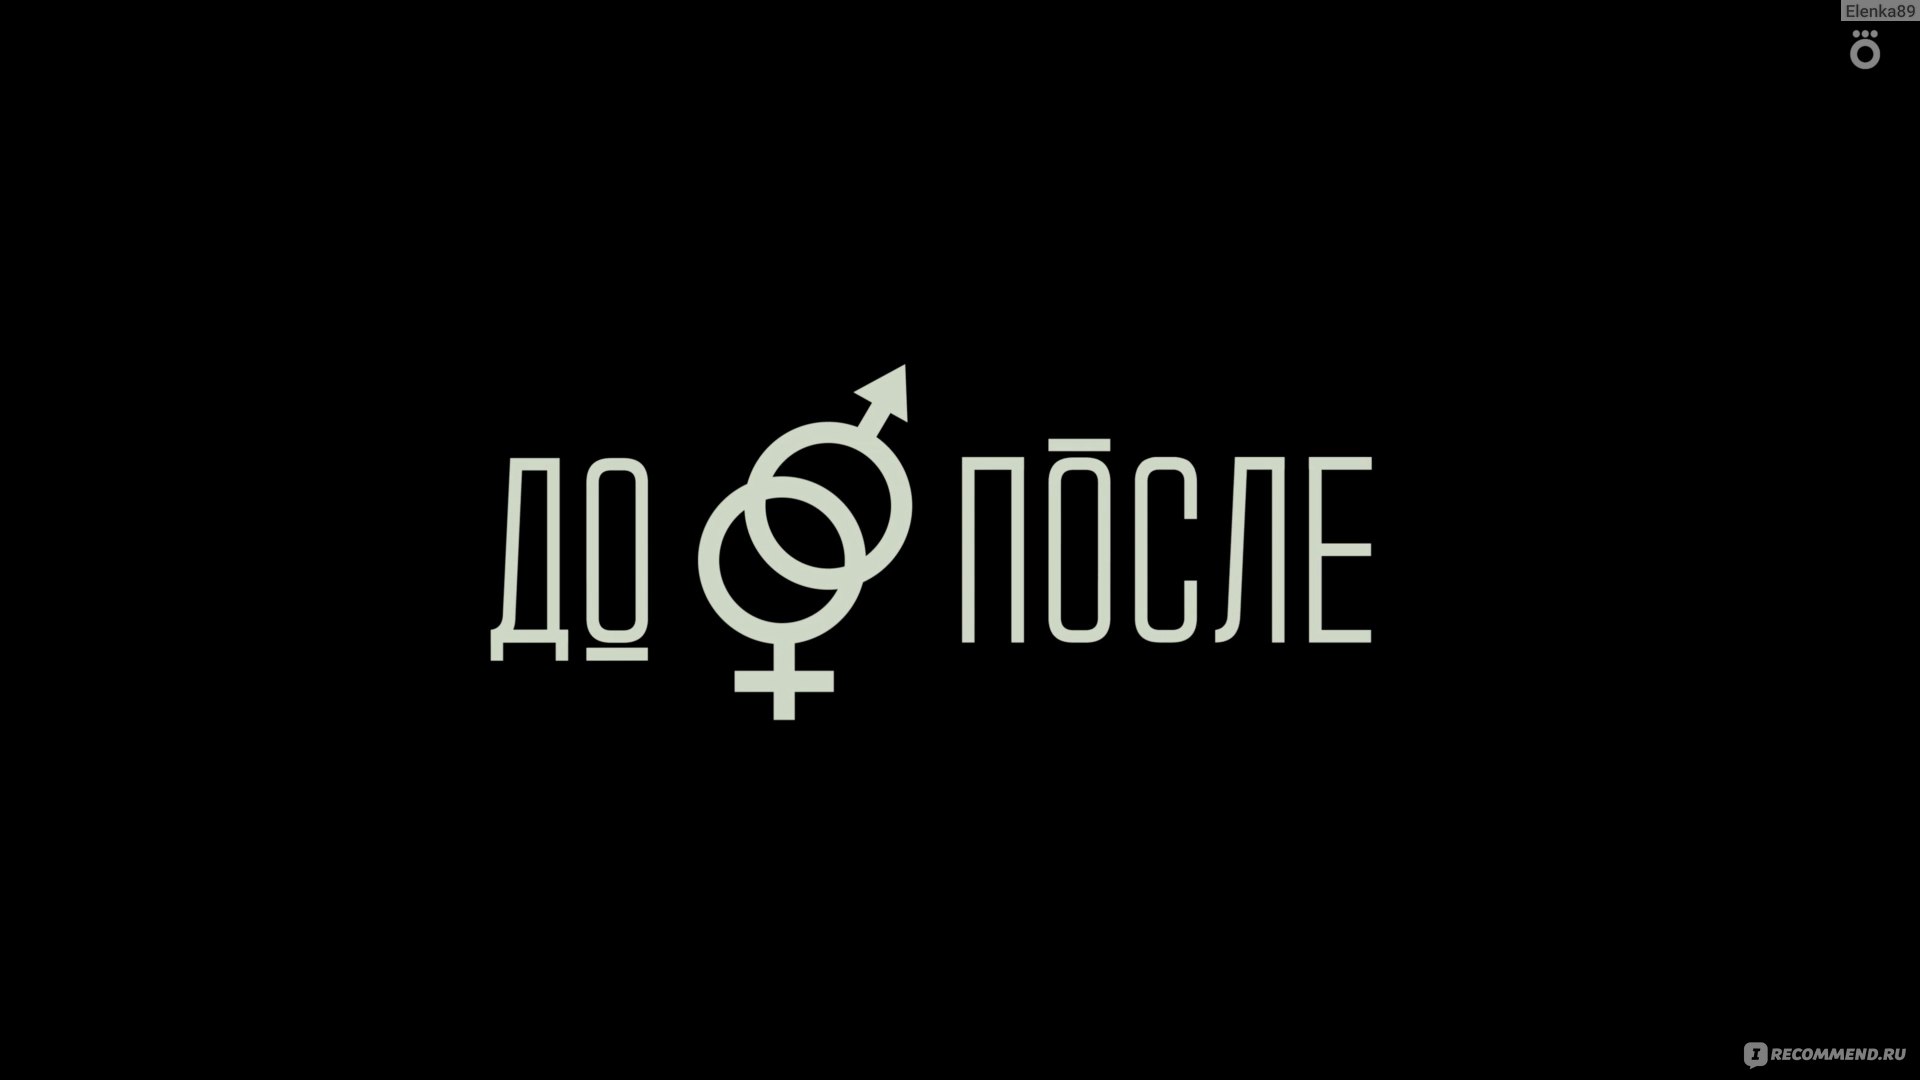 Секс после аборта - Медицинский центр «На Сенной» в СПб, доступная цена